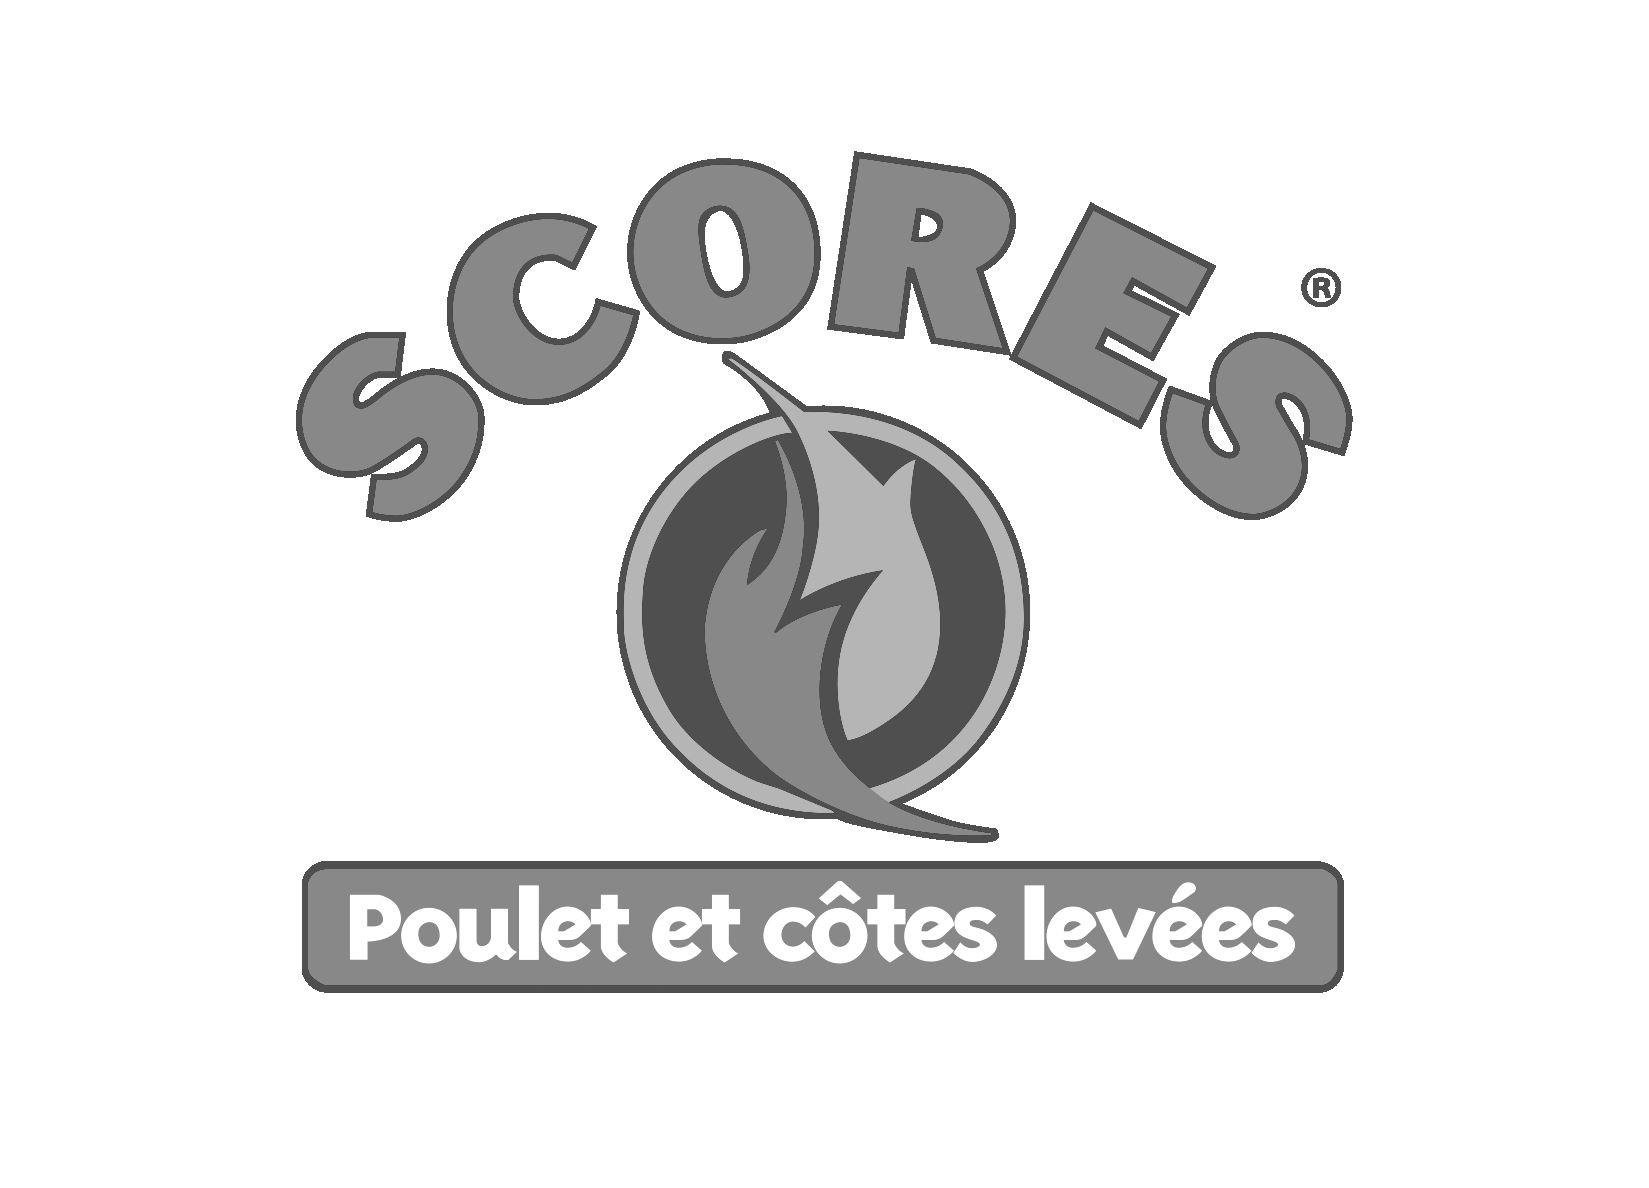 Scores_logo